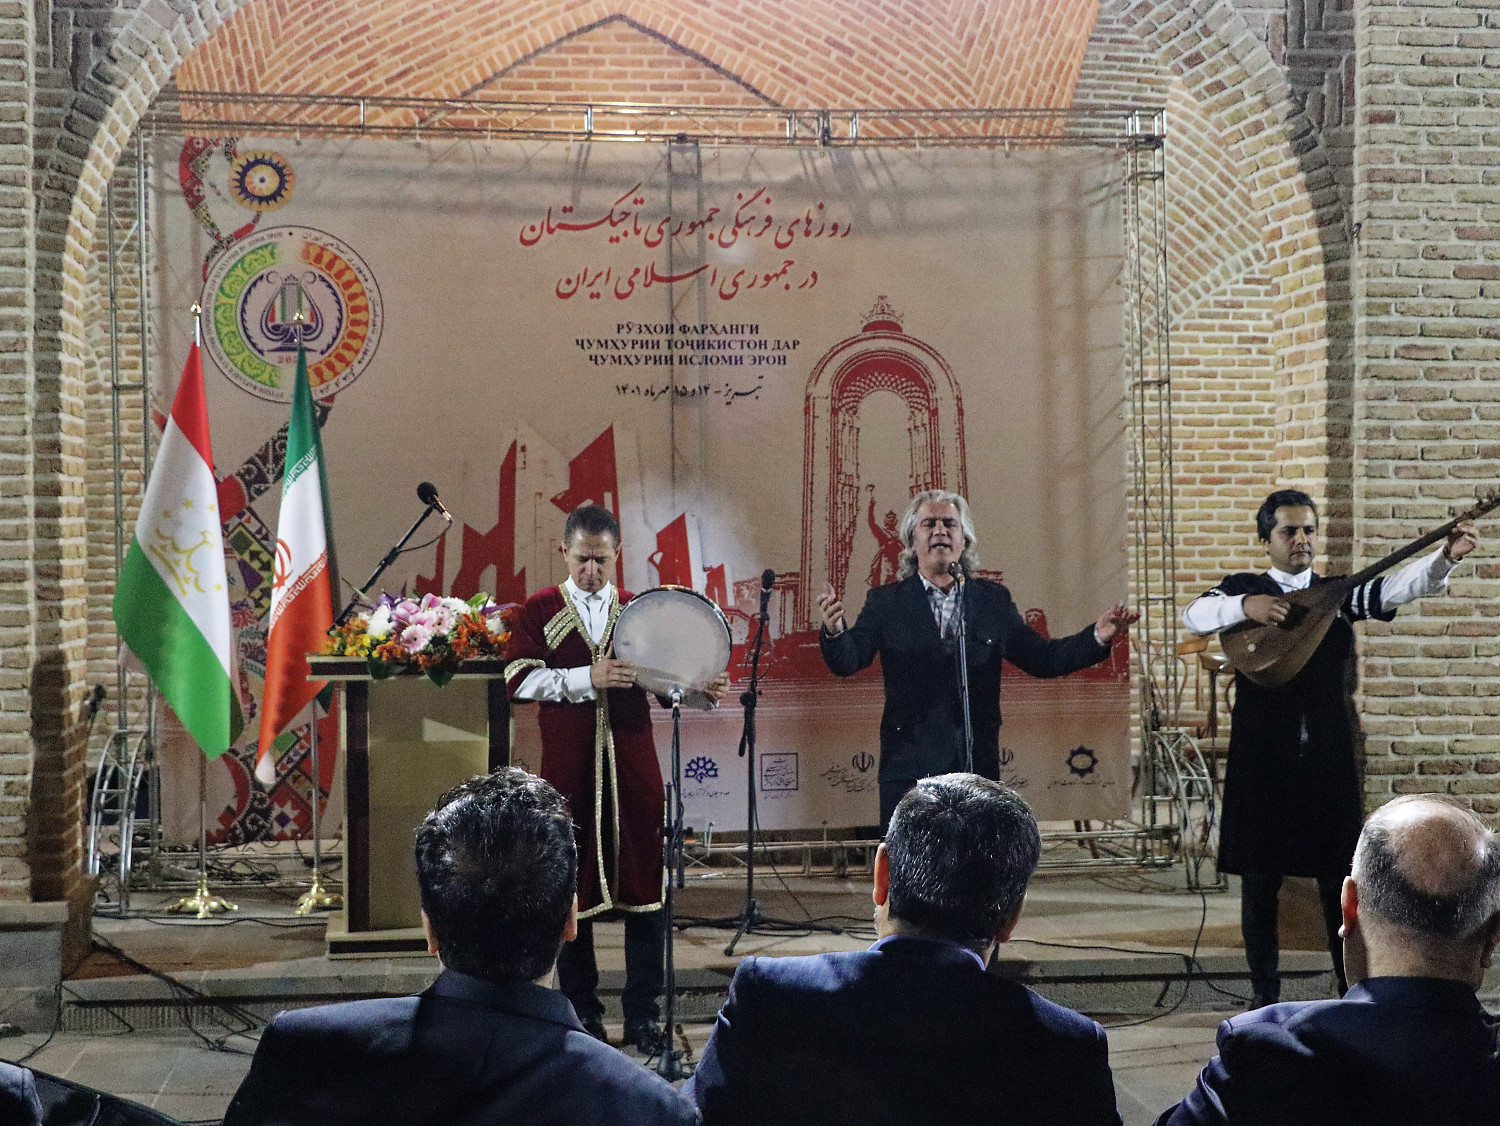 برگزاری هفته فرهنگی تاجیکستان در تبریز (روز اول)